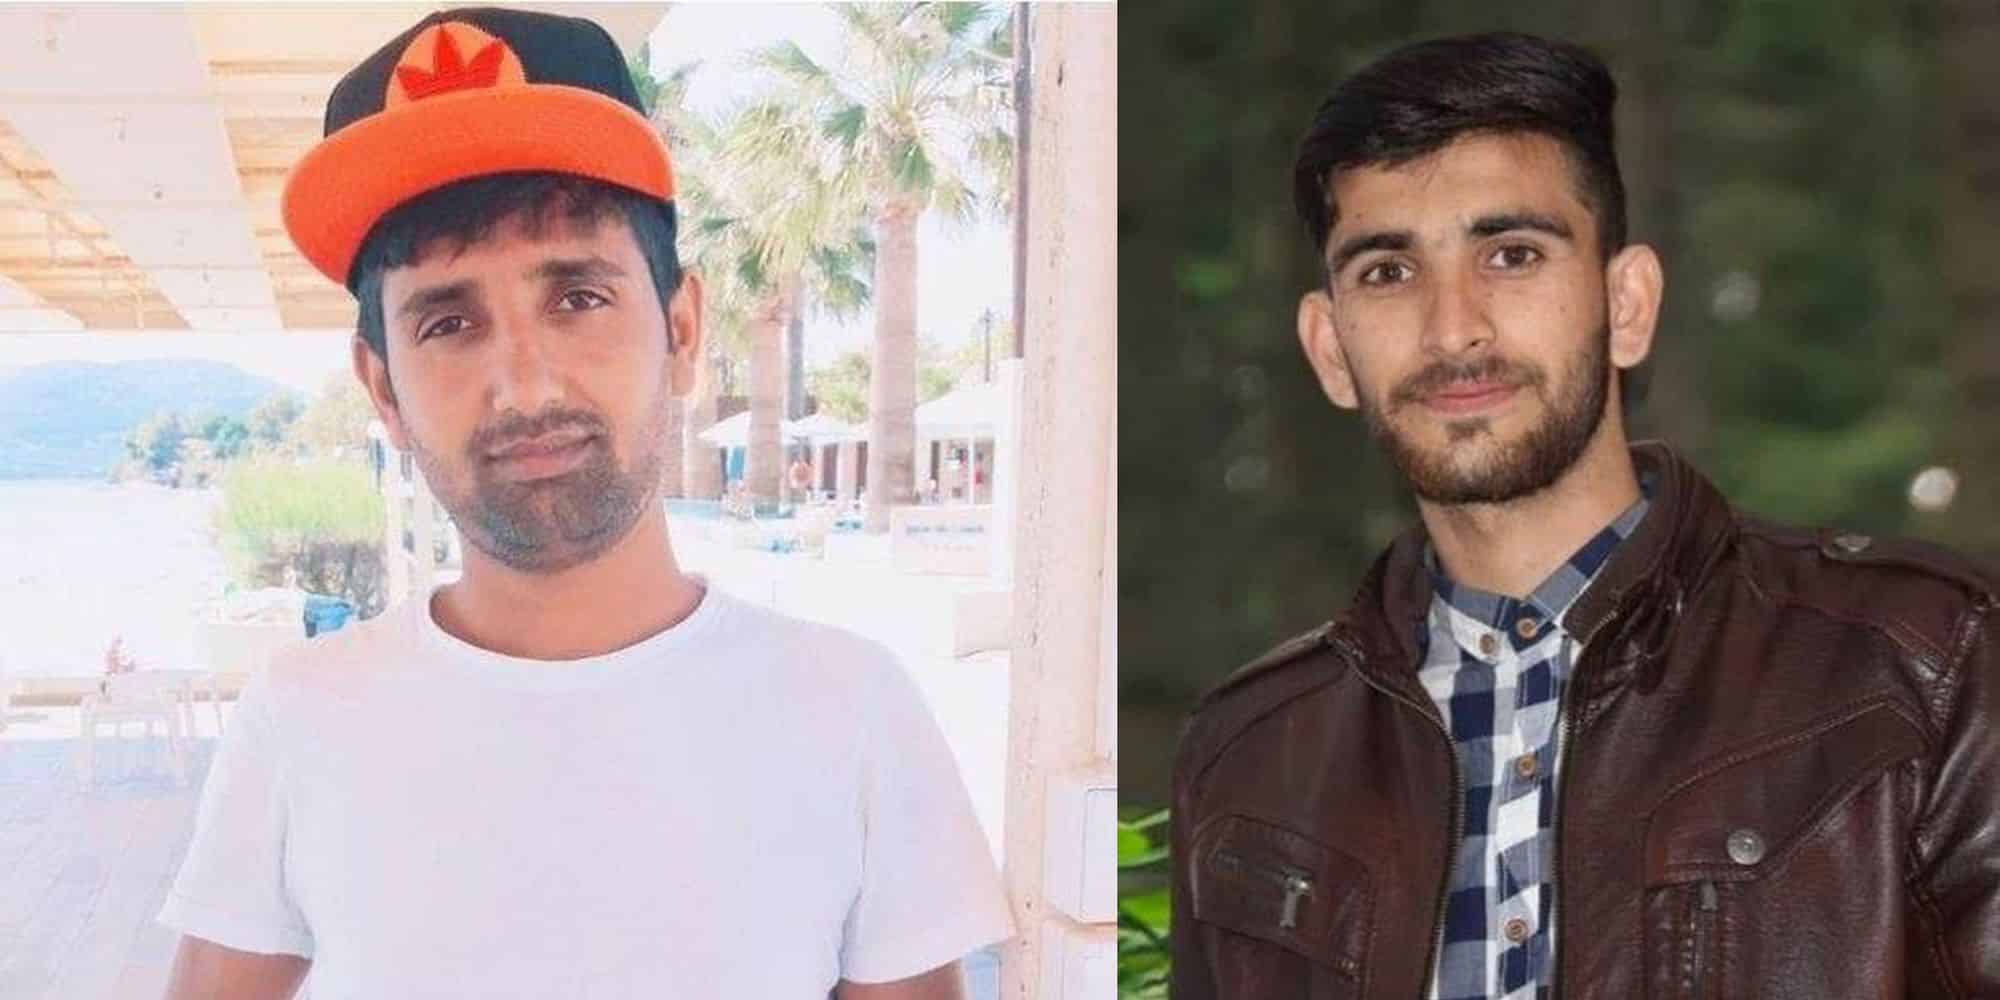 Αυτοί είναι οι δύο Πακιστανοί τρομοκράτες που σχεδίαζαν επίθεση σε εβραϊκό εστιατόριο